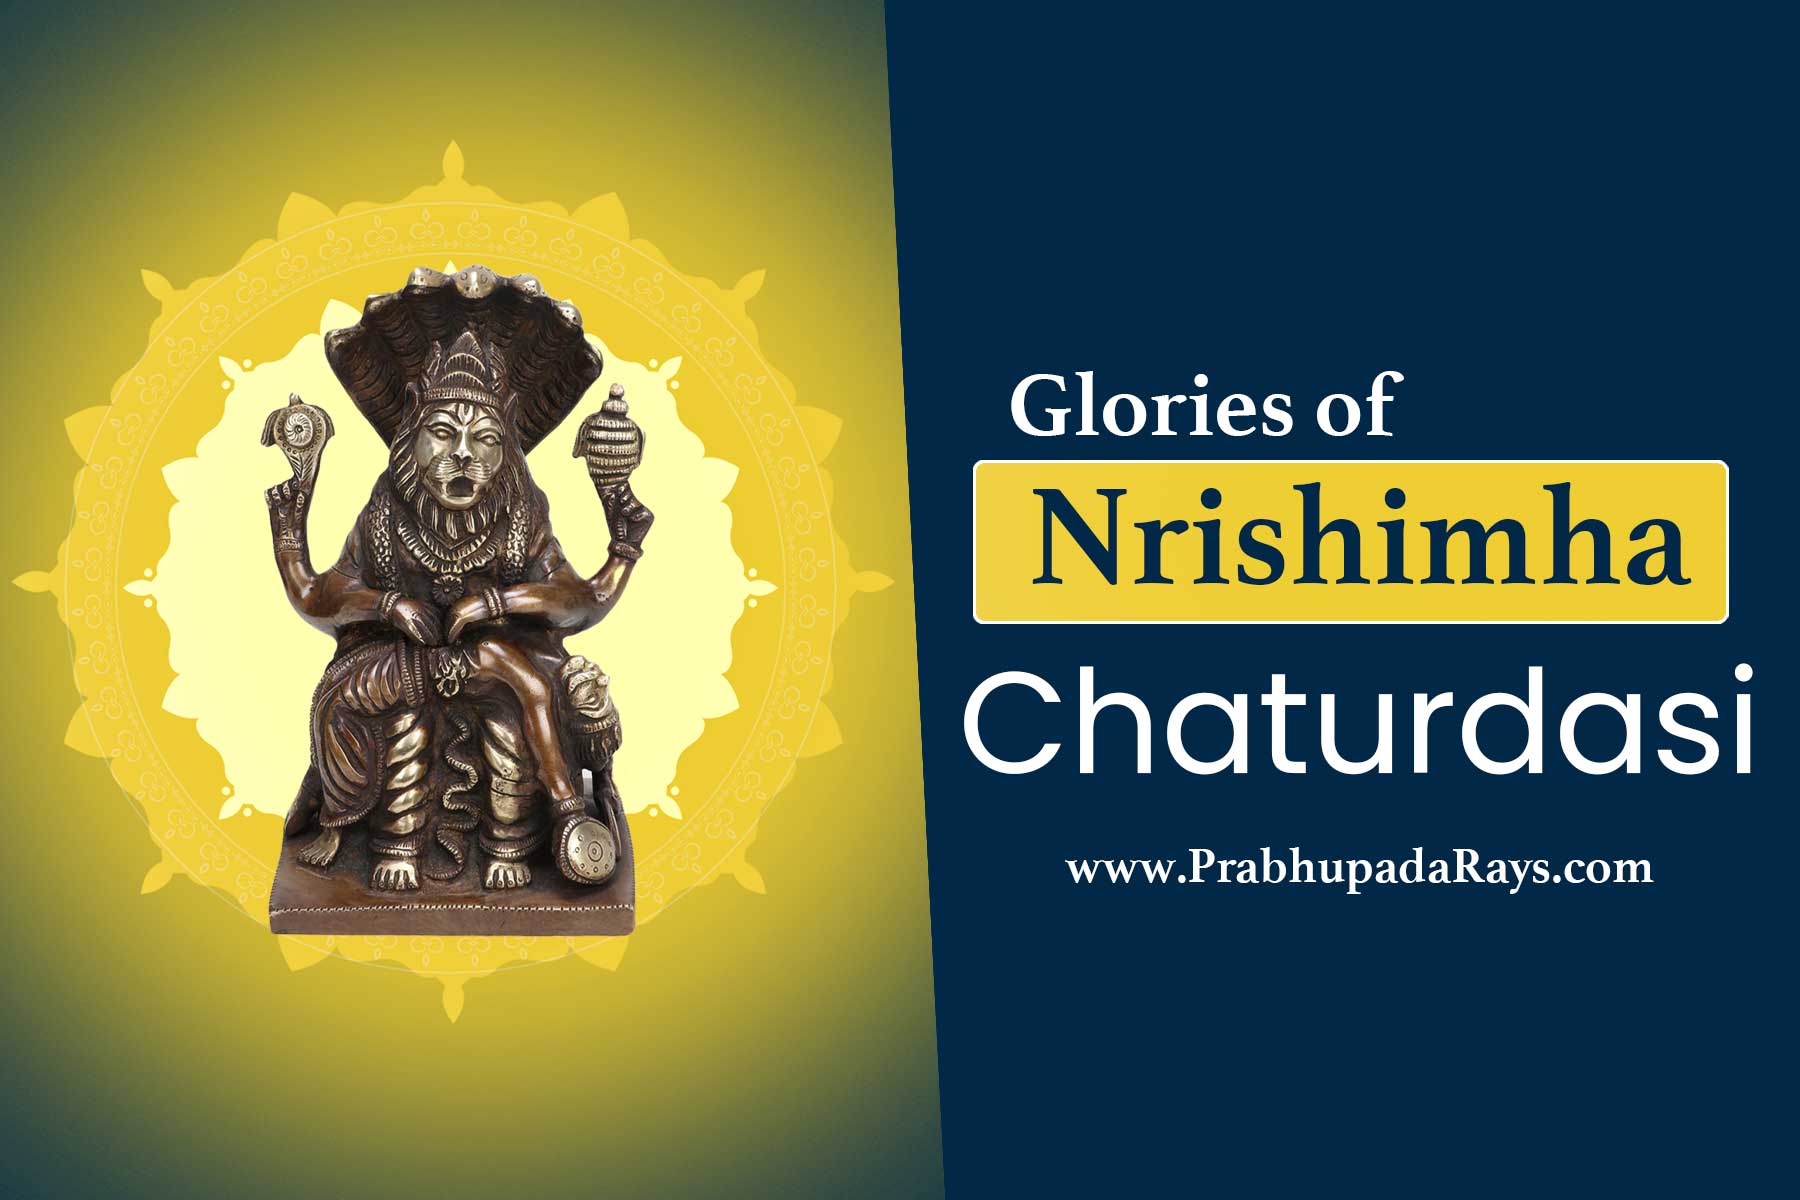 Nrishimha Chaturdasi - Prabhupada Rays